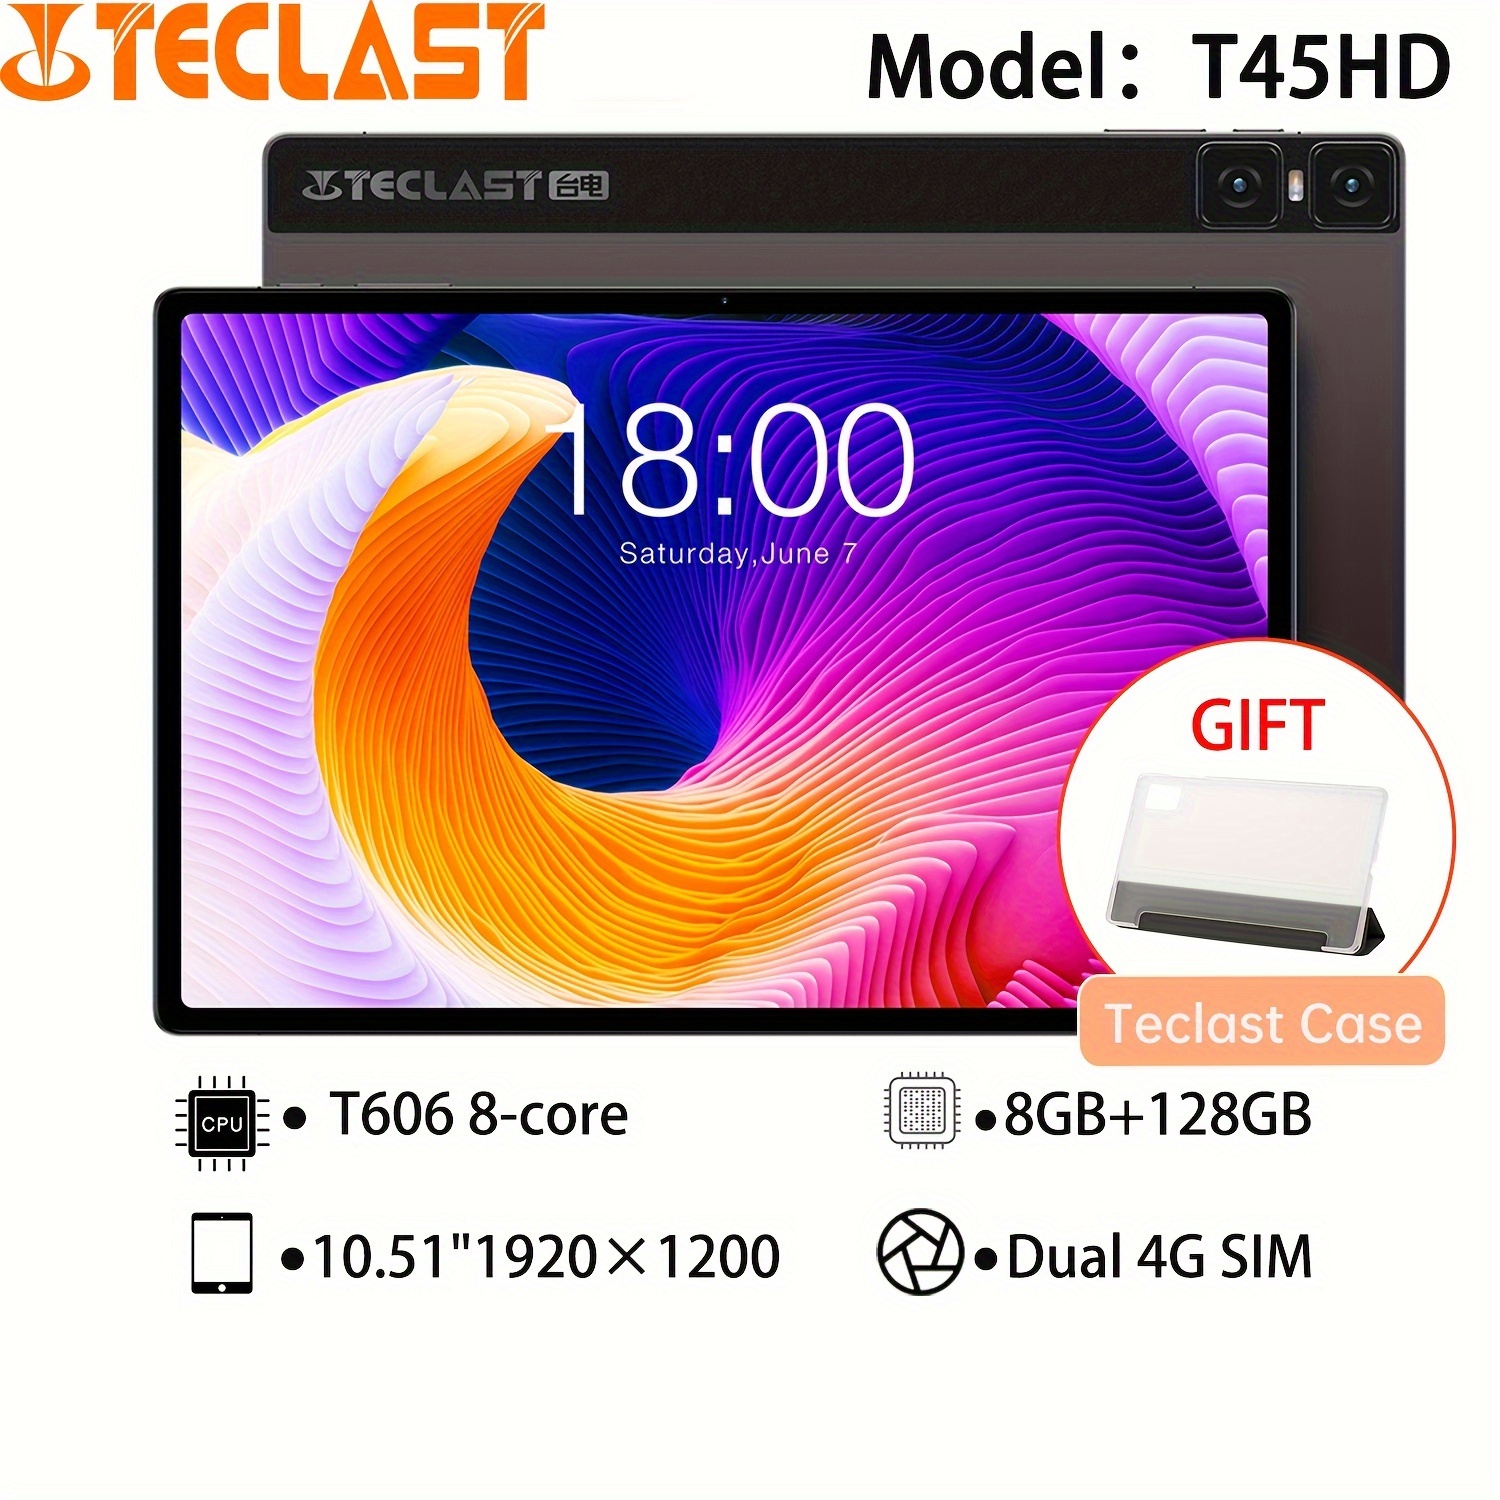 Tablette Teclast P40hd 2023 (unisoc T606 8-core /16 Go (8 Go + 8